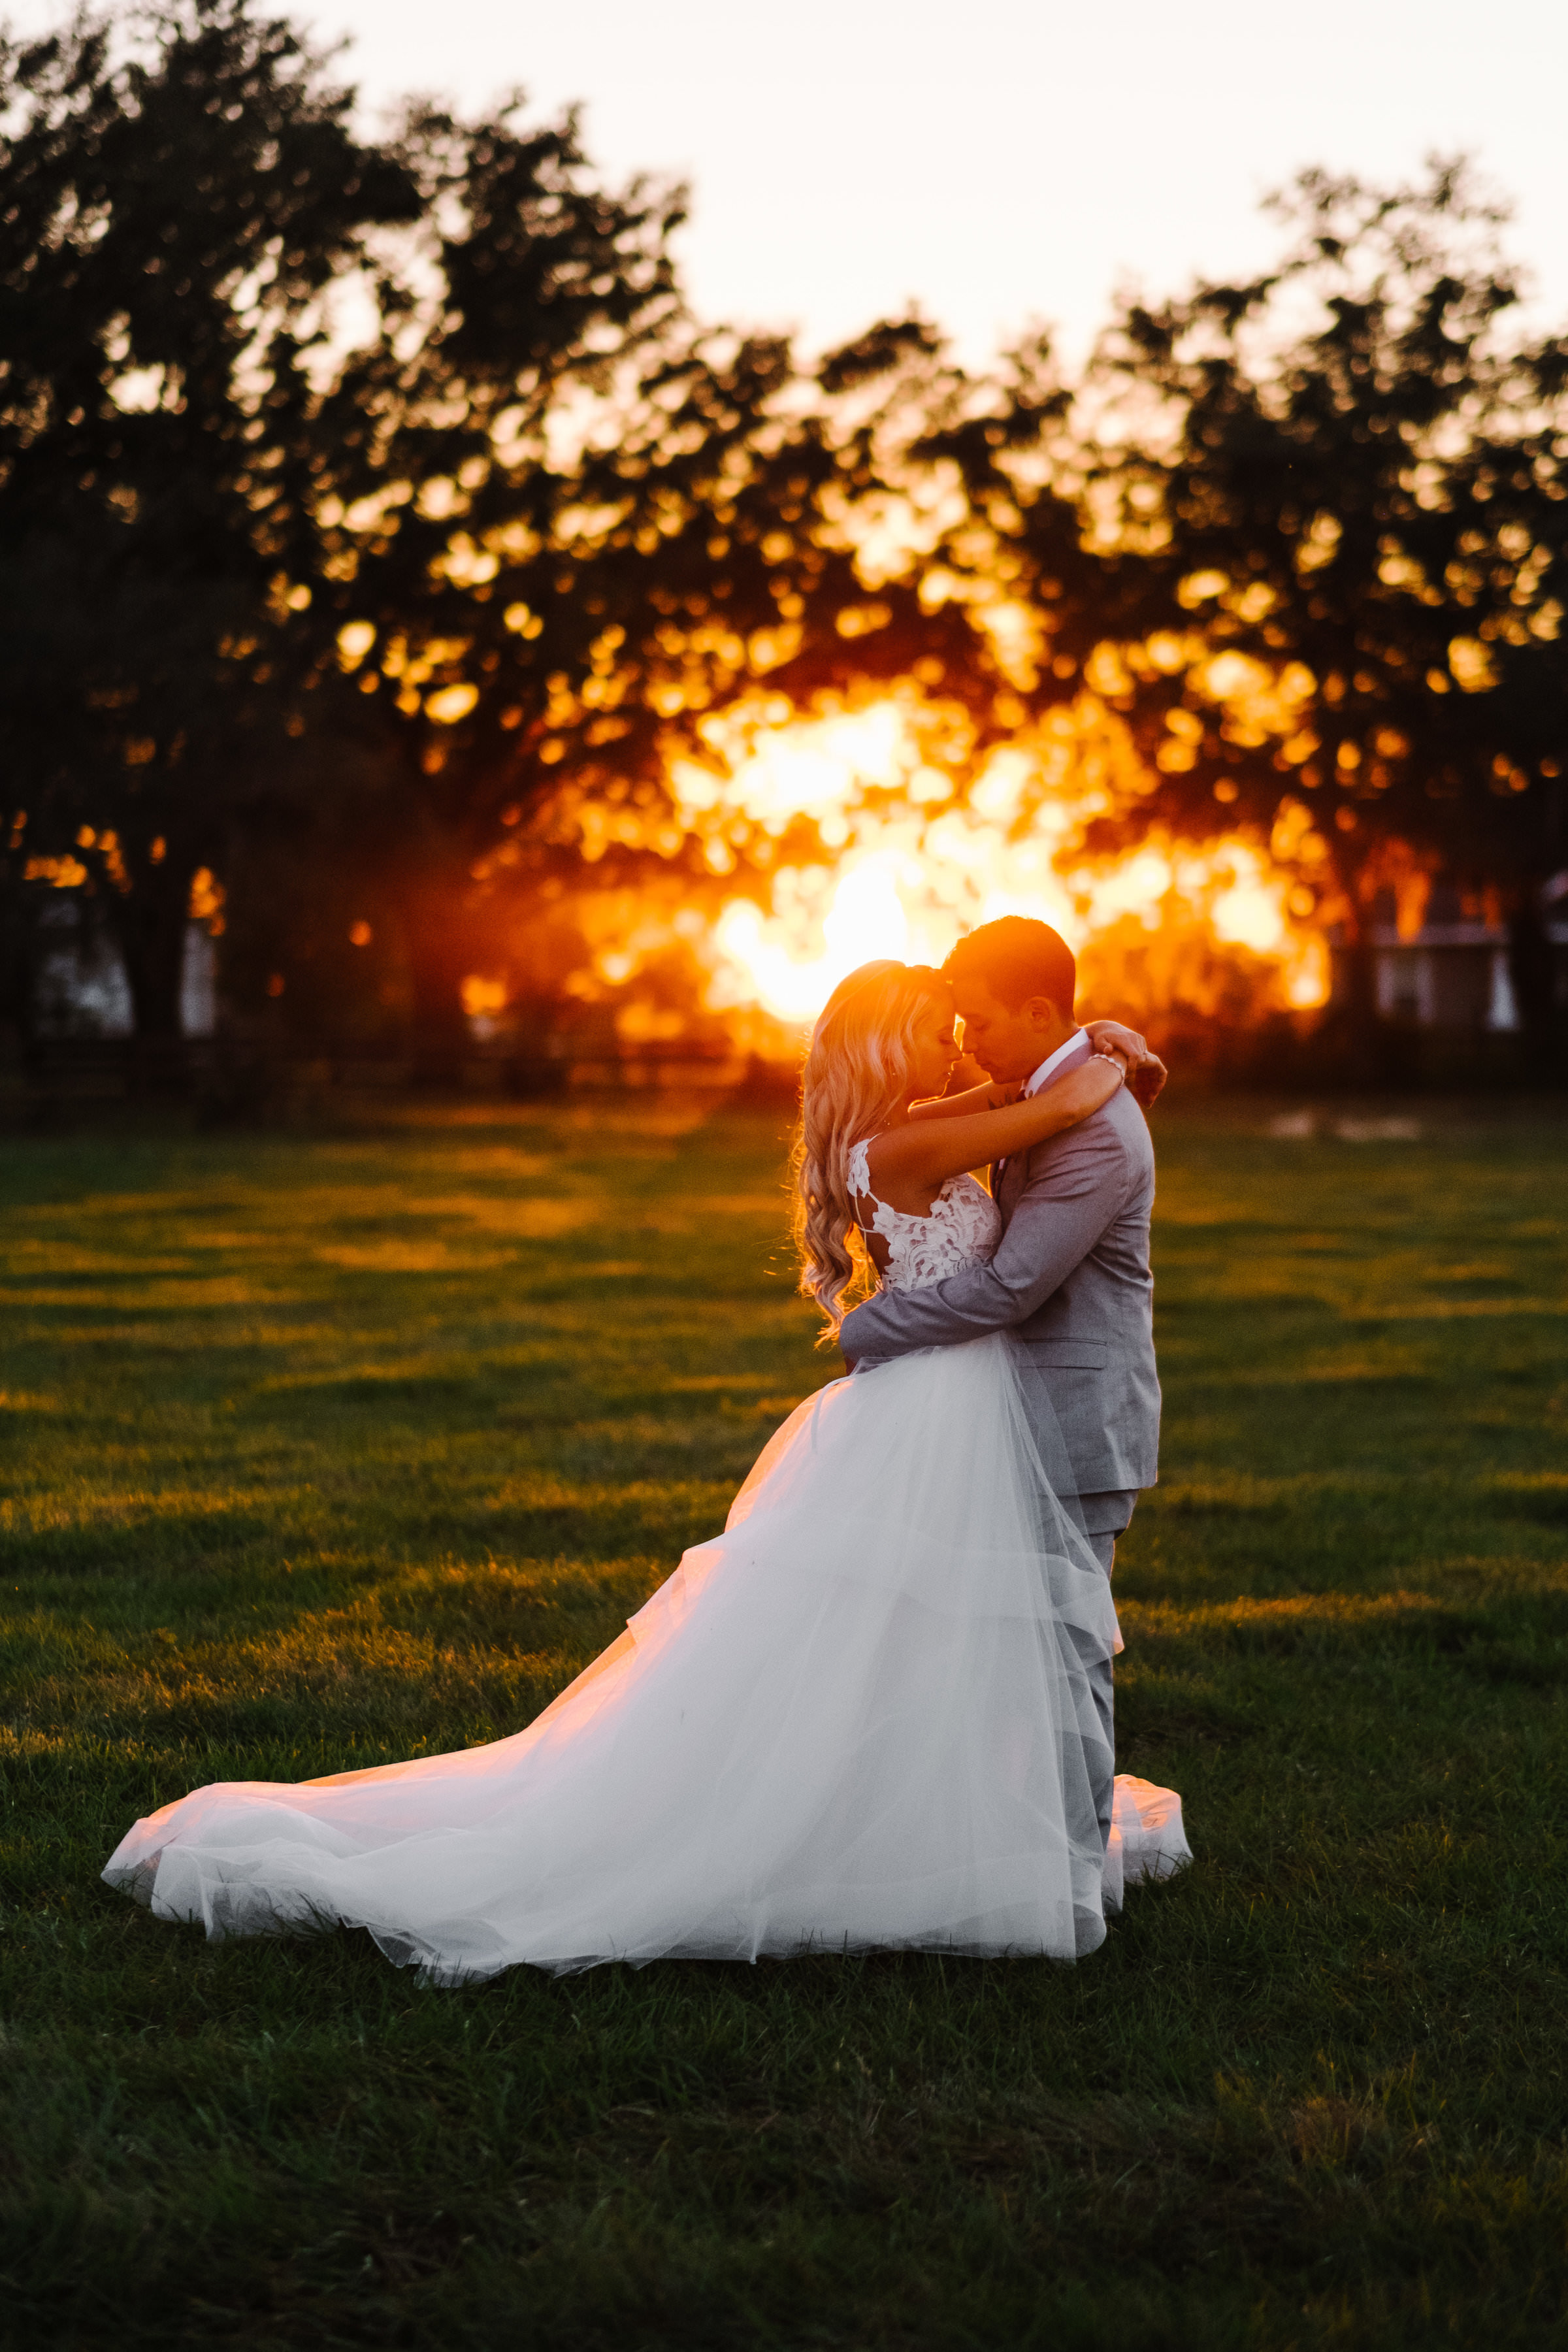 Tampa Florida Wedding Photographer | Benjamin Hewitt Photography